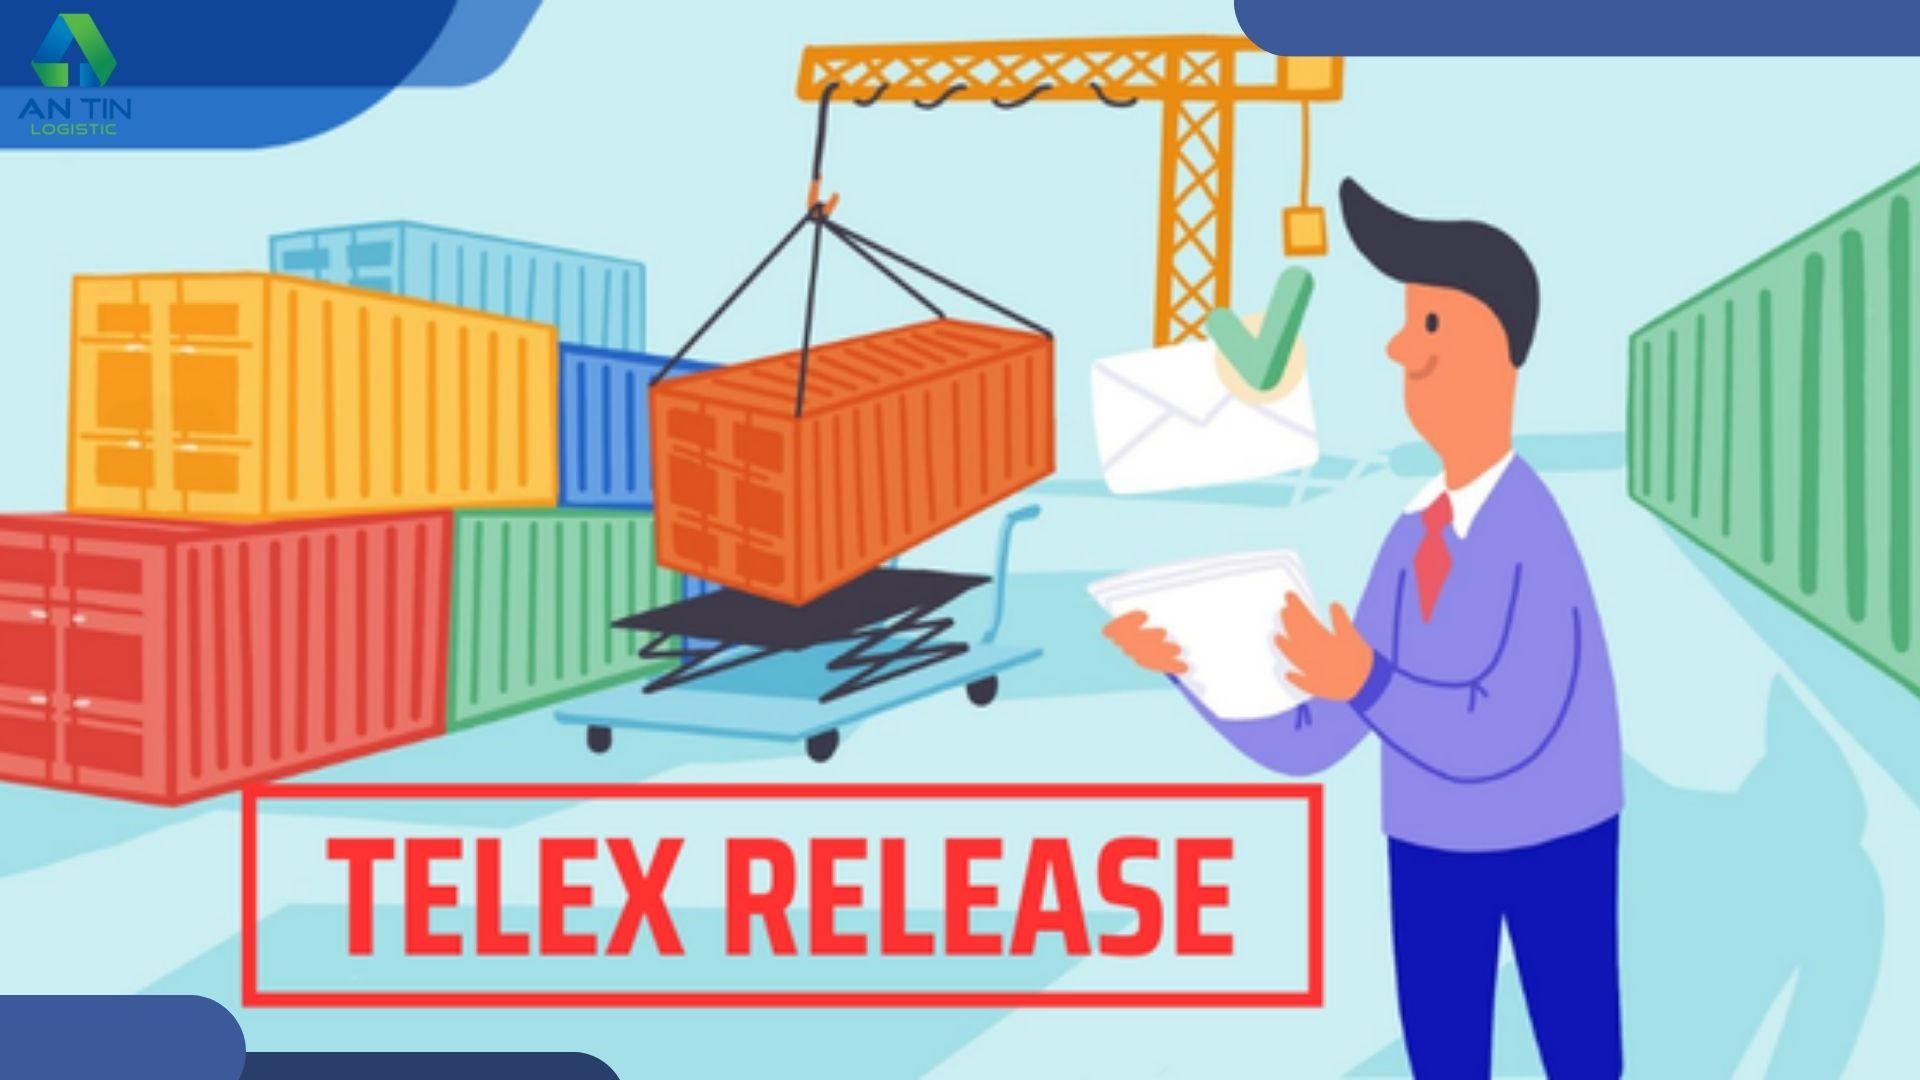 Telex Release được sử dụng trong những trường hợp nào?